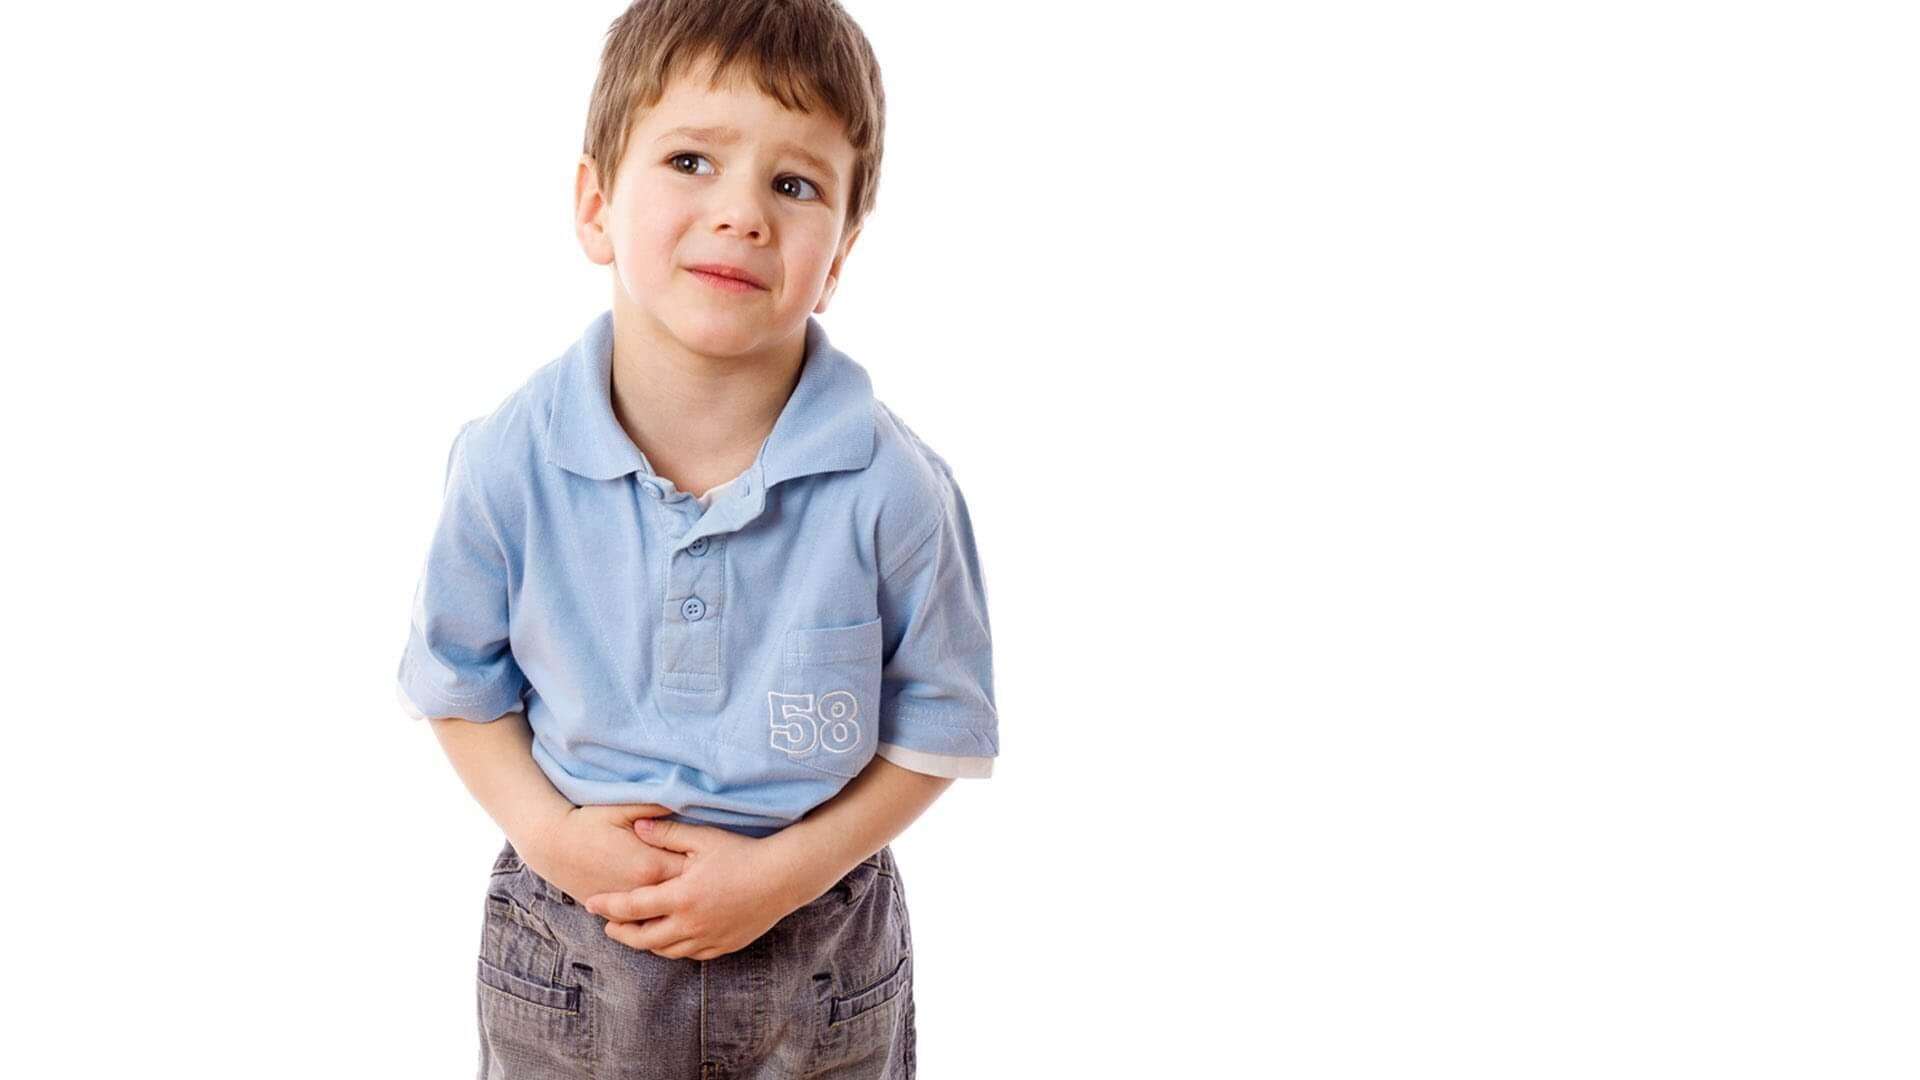 ये है बच्चों में पेट की बिमारियों के लक्षण, जानिए